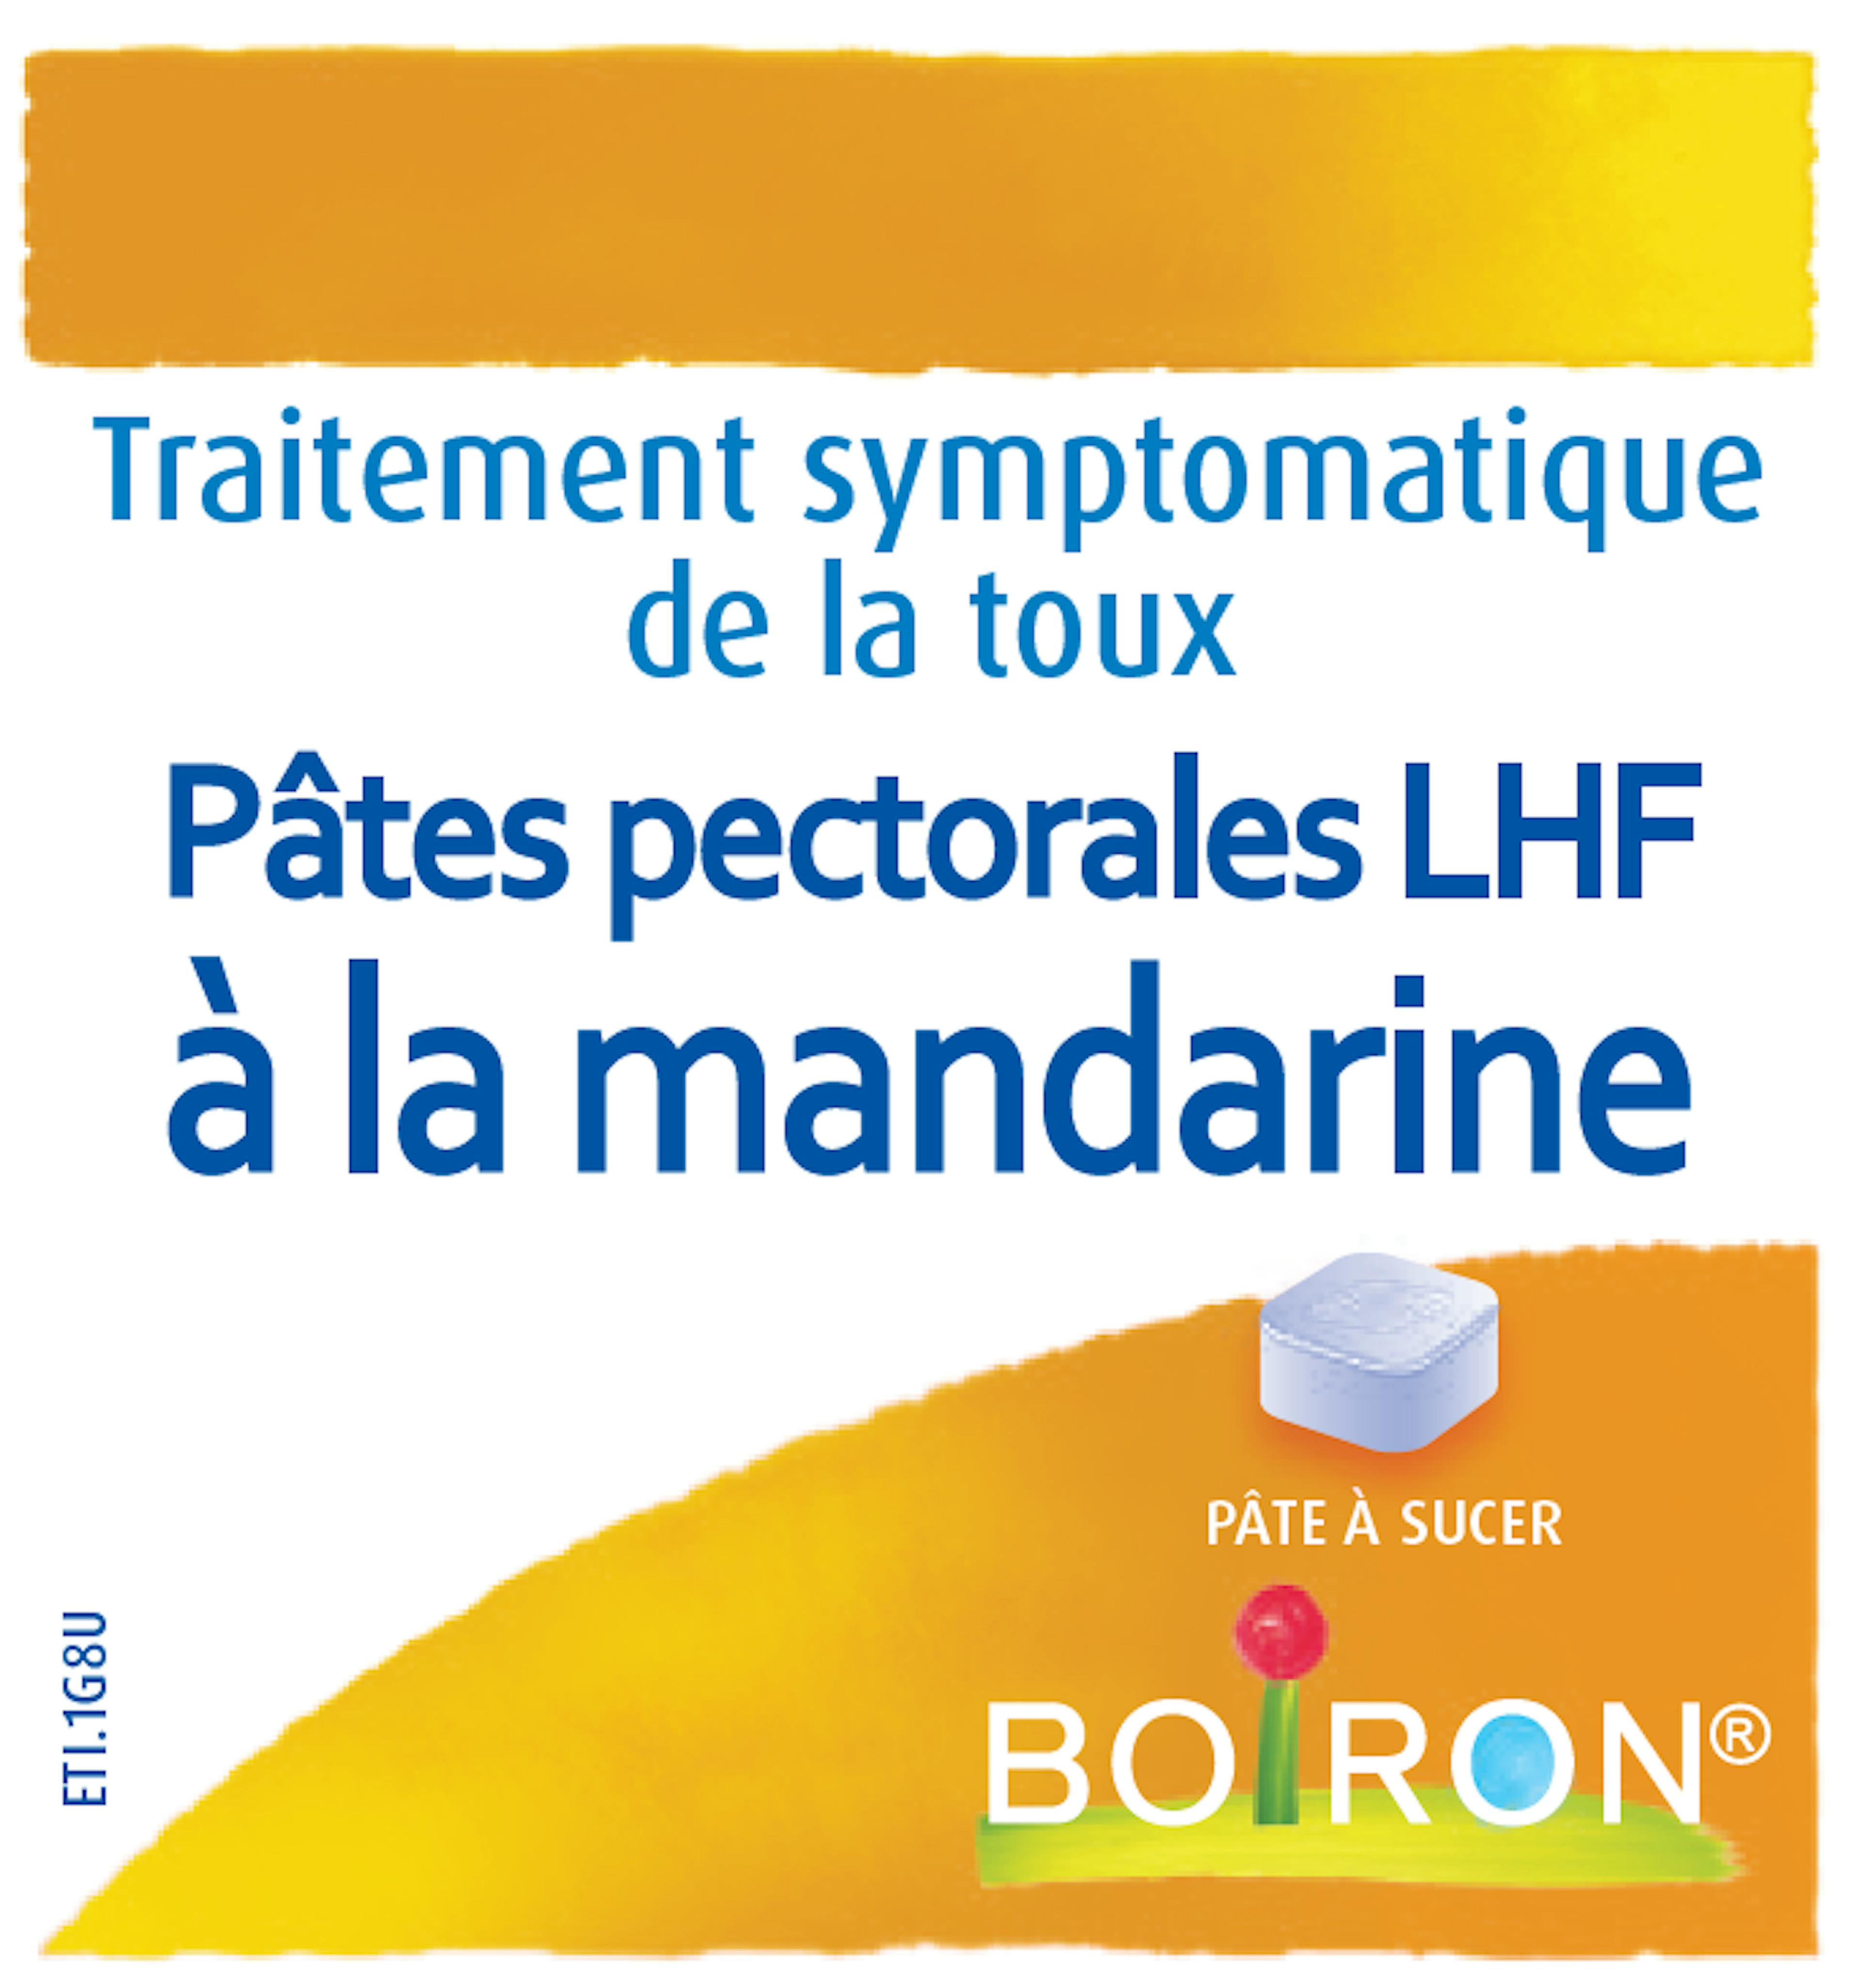 Homéopathie symptômes toux - Pâtes pectorales LHF à la mandarine Boiron